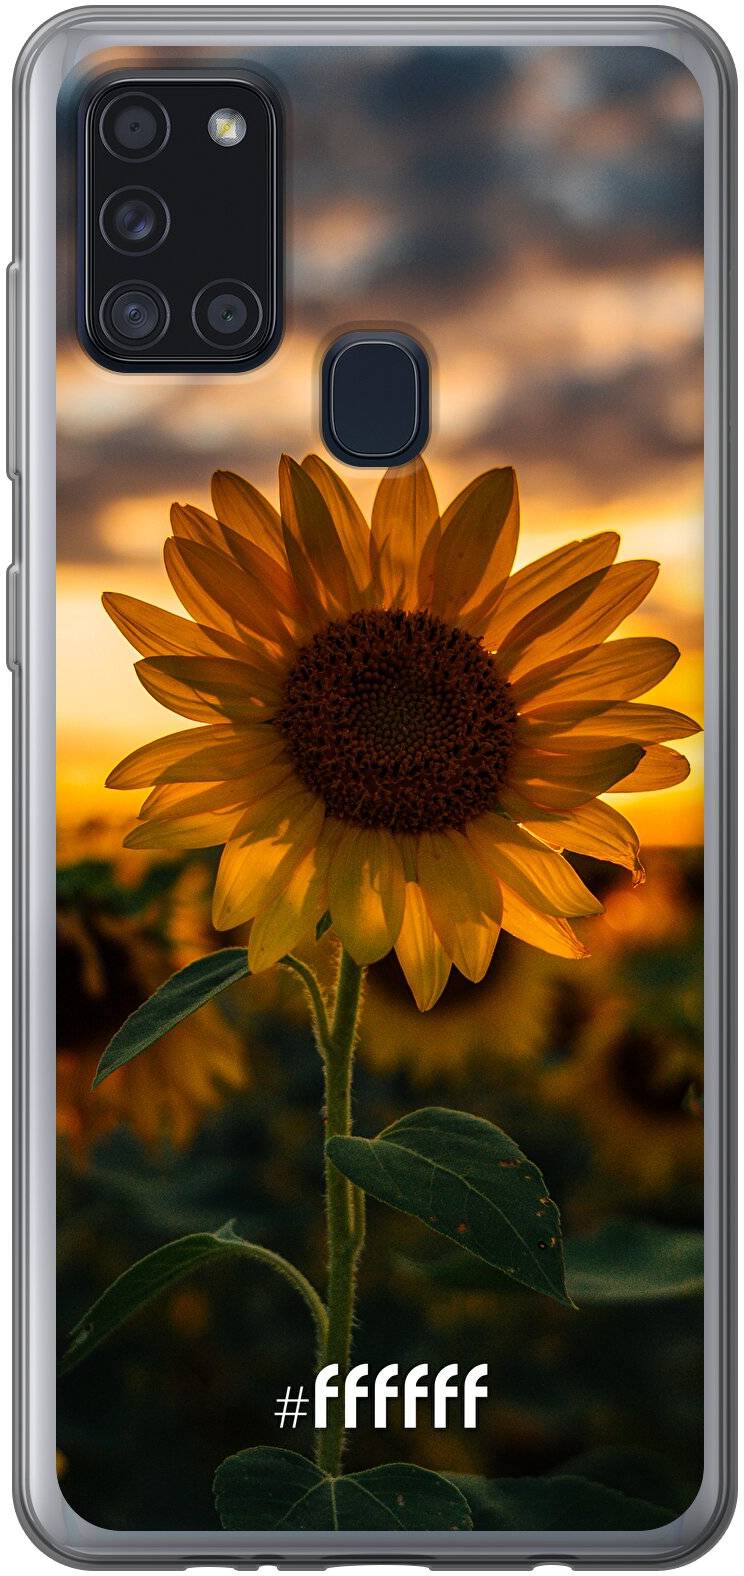 Sunset Sunflower Galaxy A21s